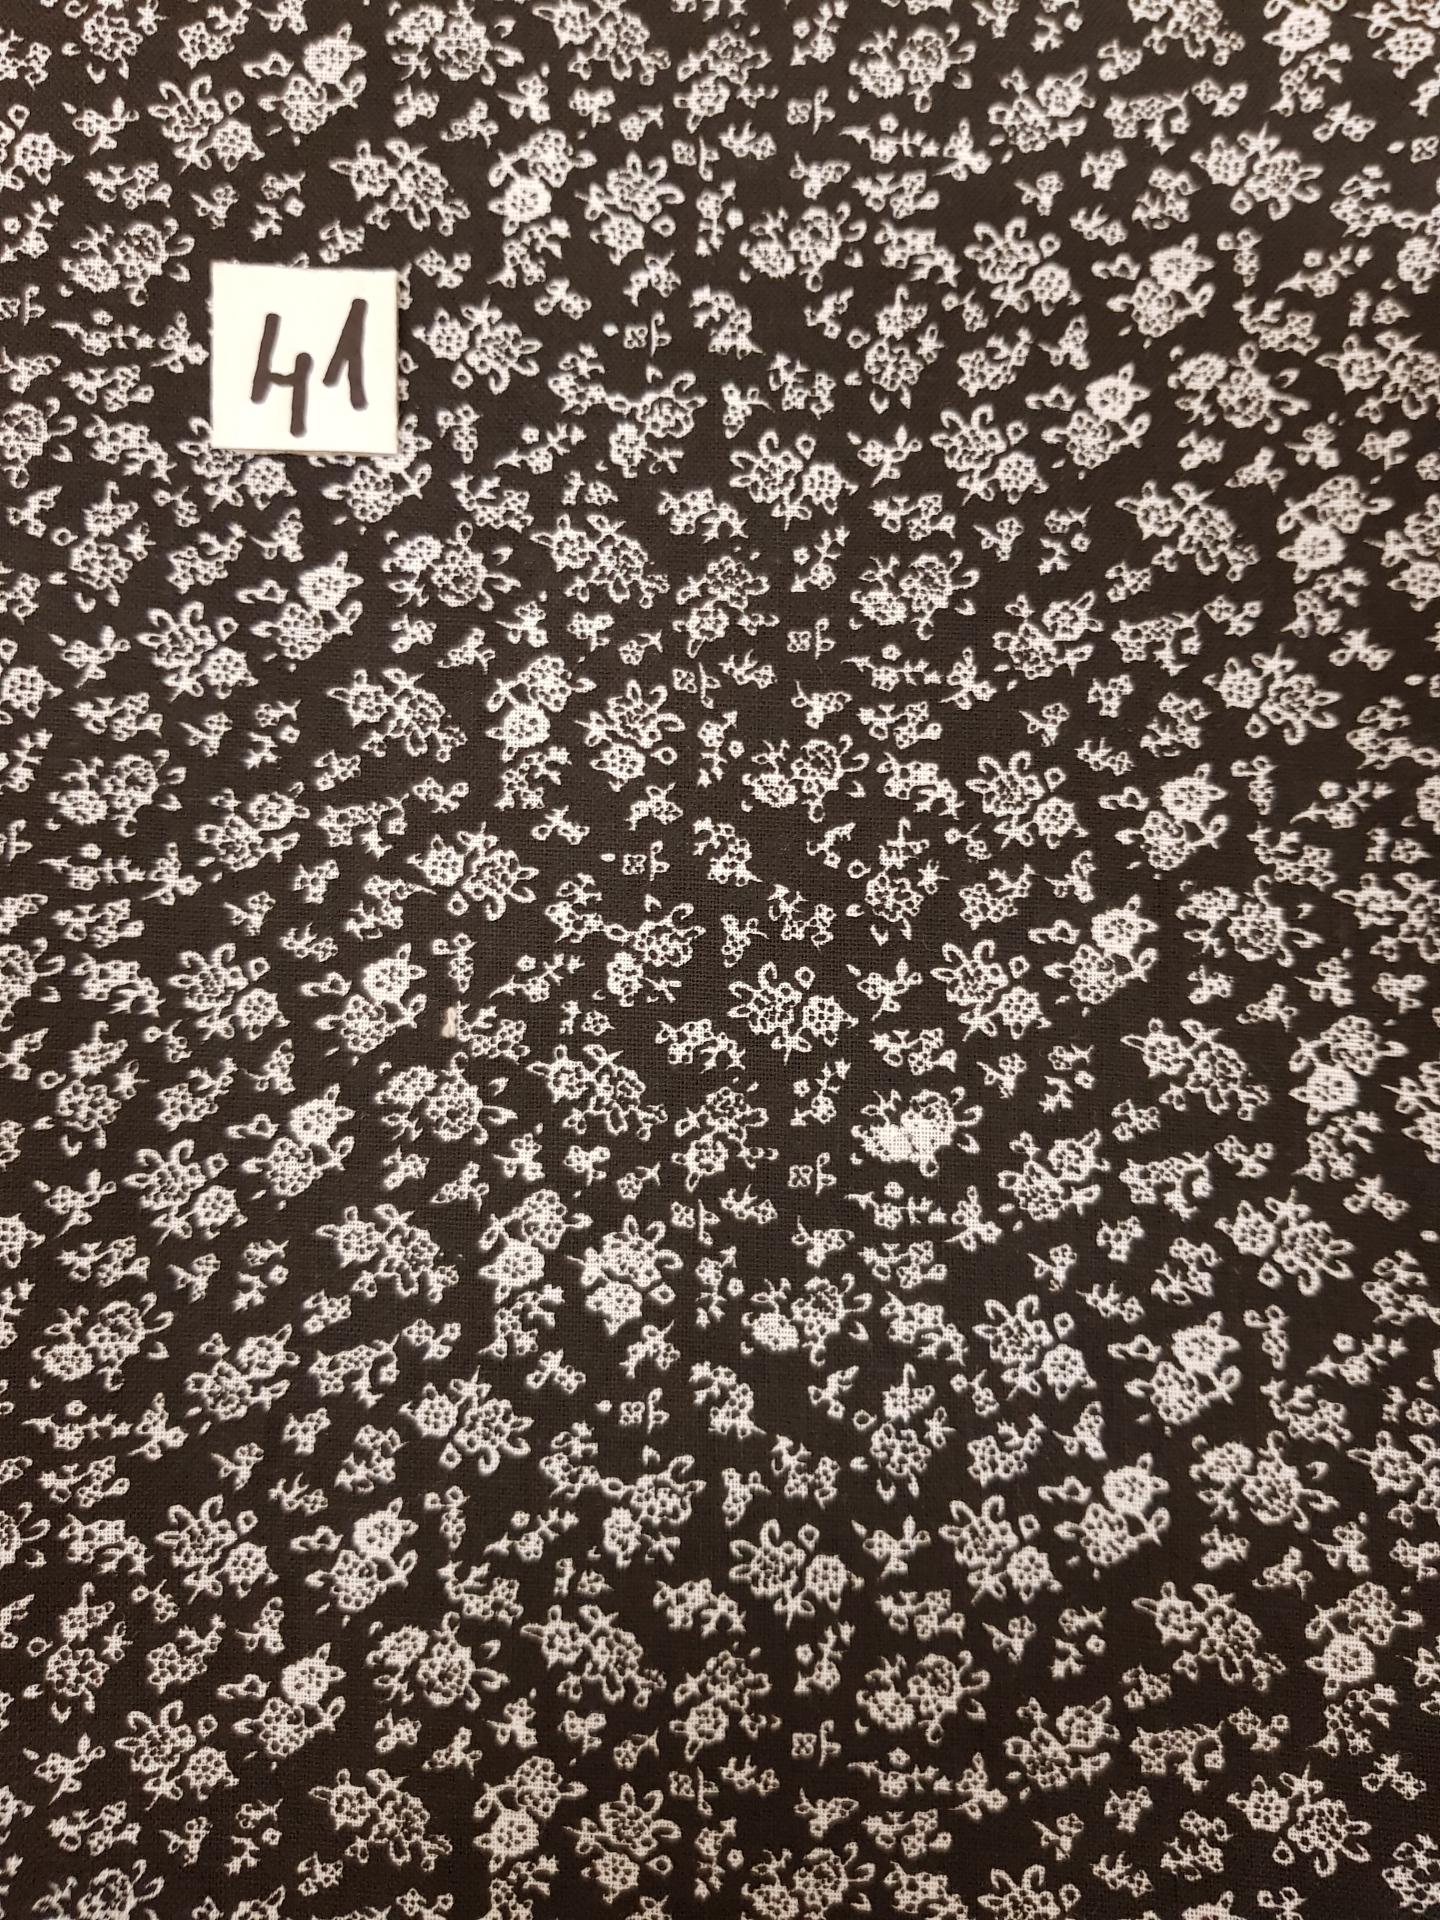 41 tissus lingettes fleurs fd noir 41